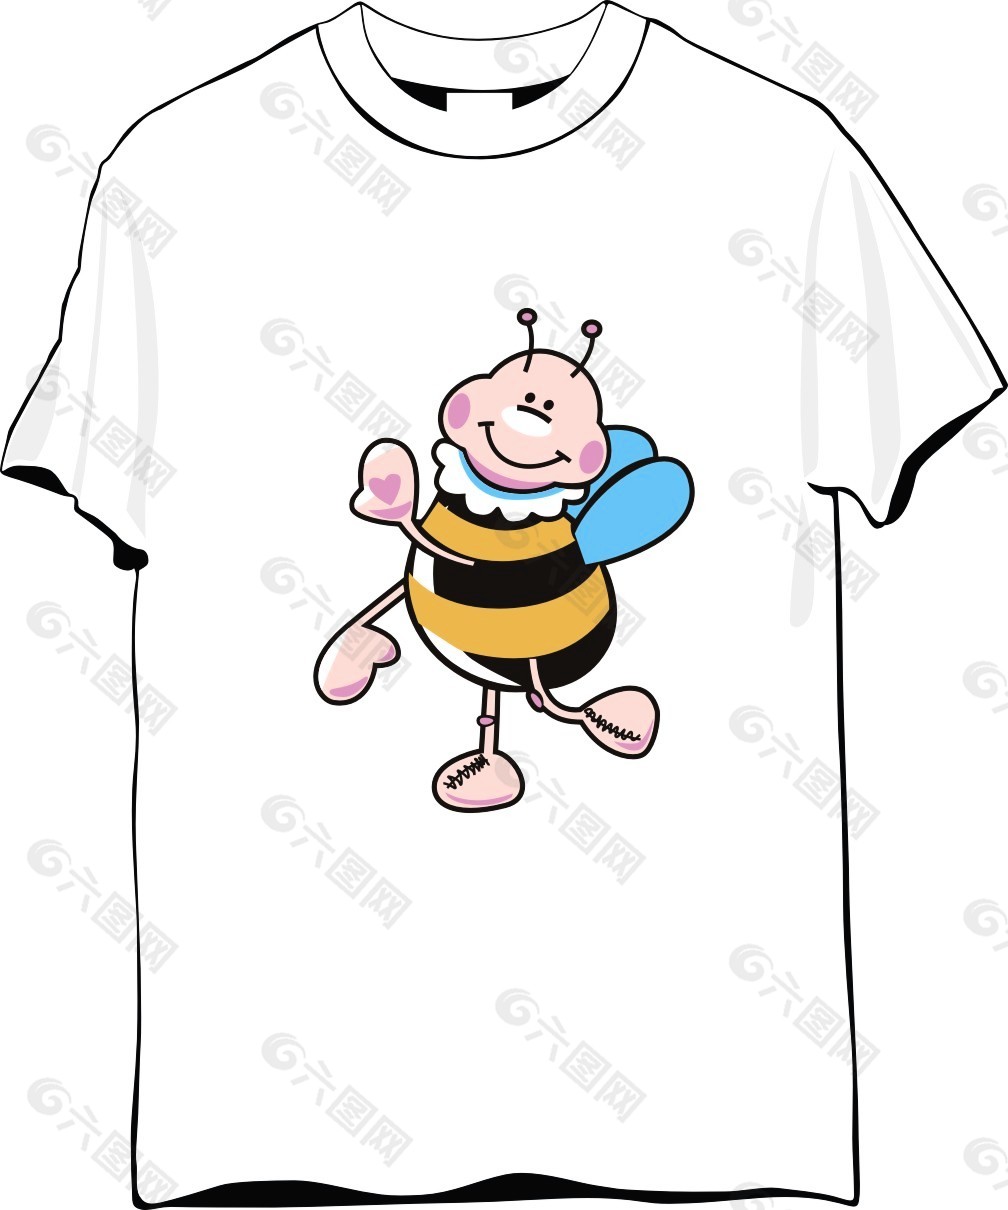 纪念T恤设计蜜蜂